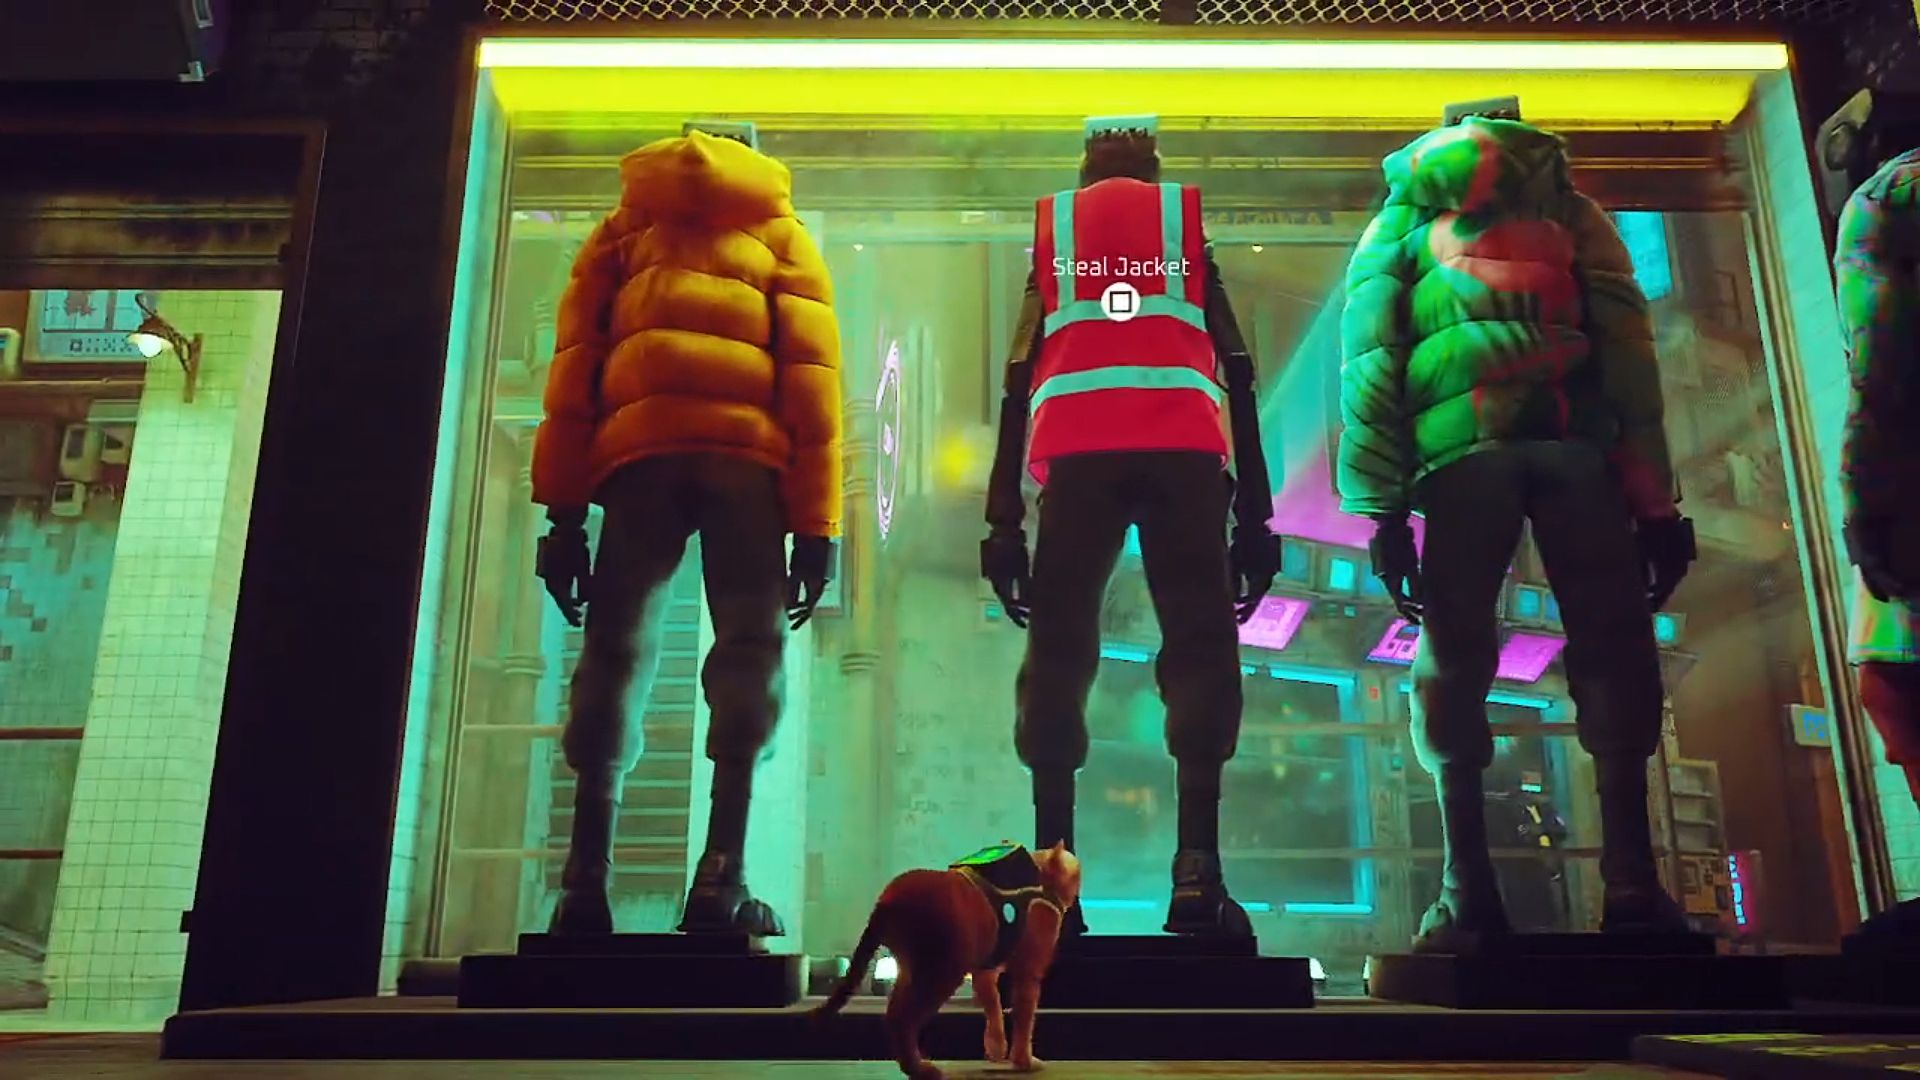 Jaket Pekerja Stray: Tiga manekin di jendela toko pakaian di Midtown, dua di antaranya mengenakan jaket puffer berwarna kuning dan hijau sementara manekin tengah memakai jaket pekerja hi-viz merah